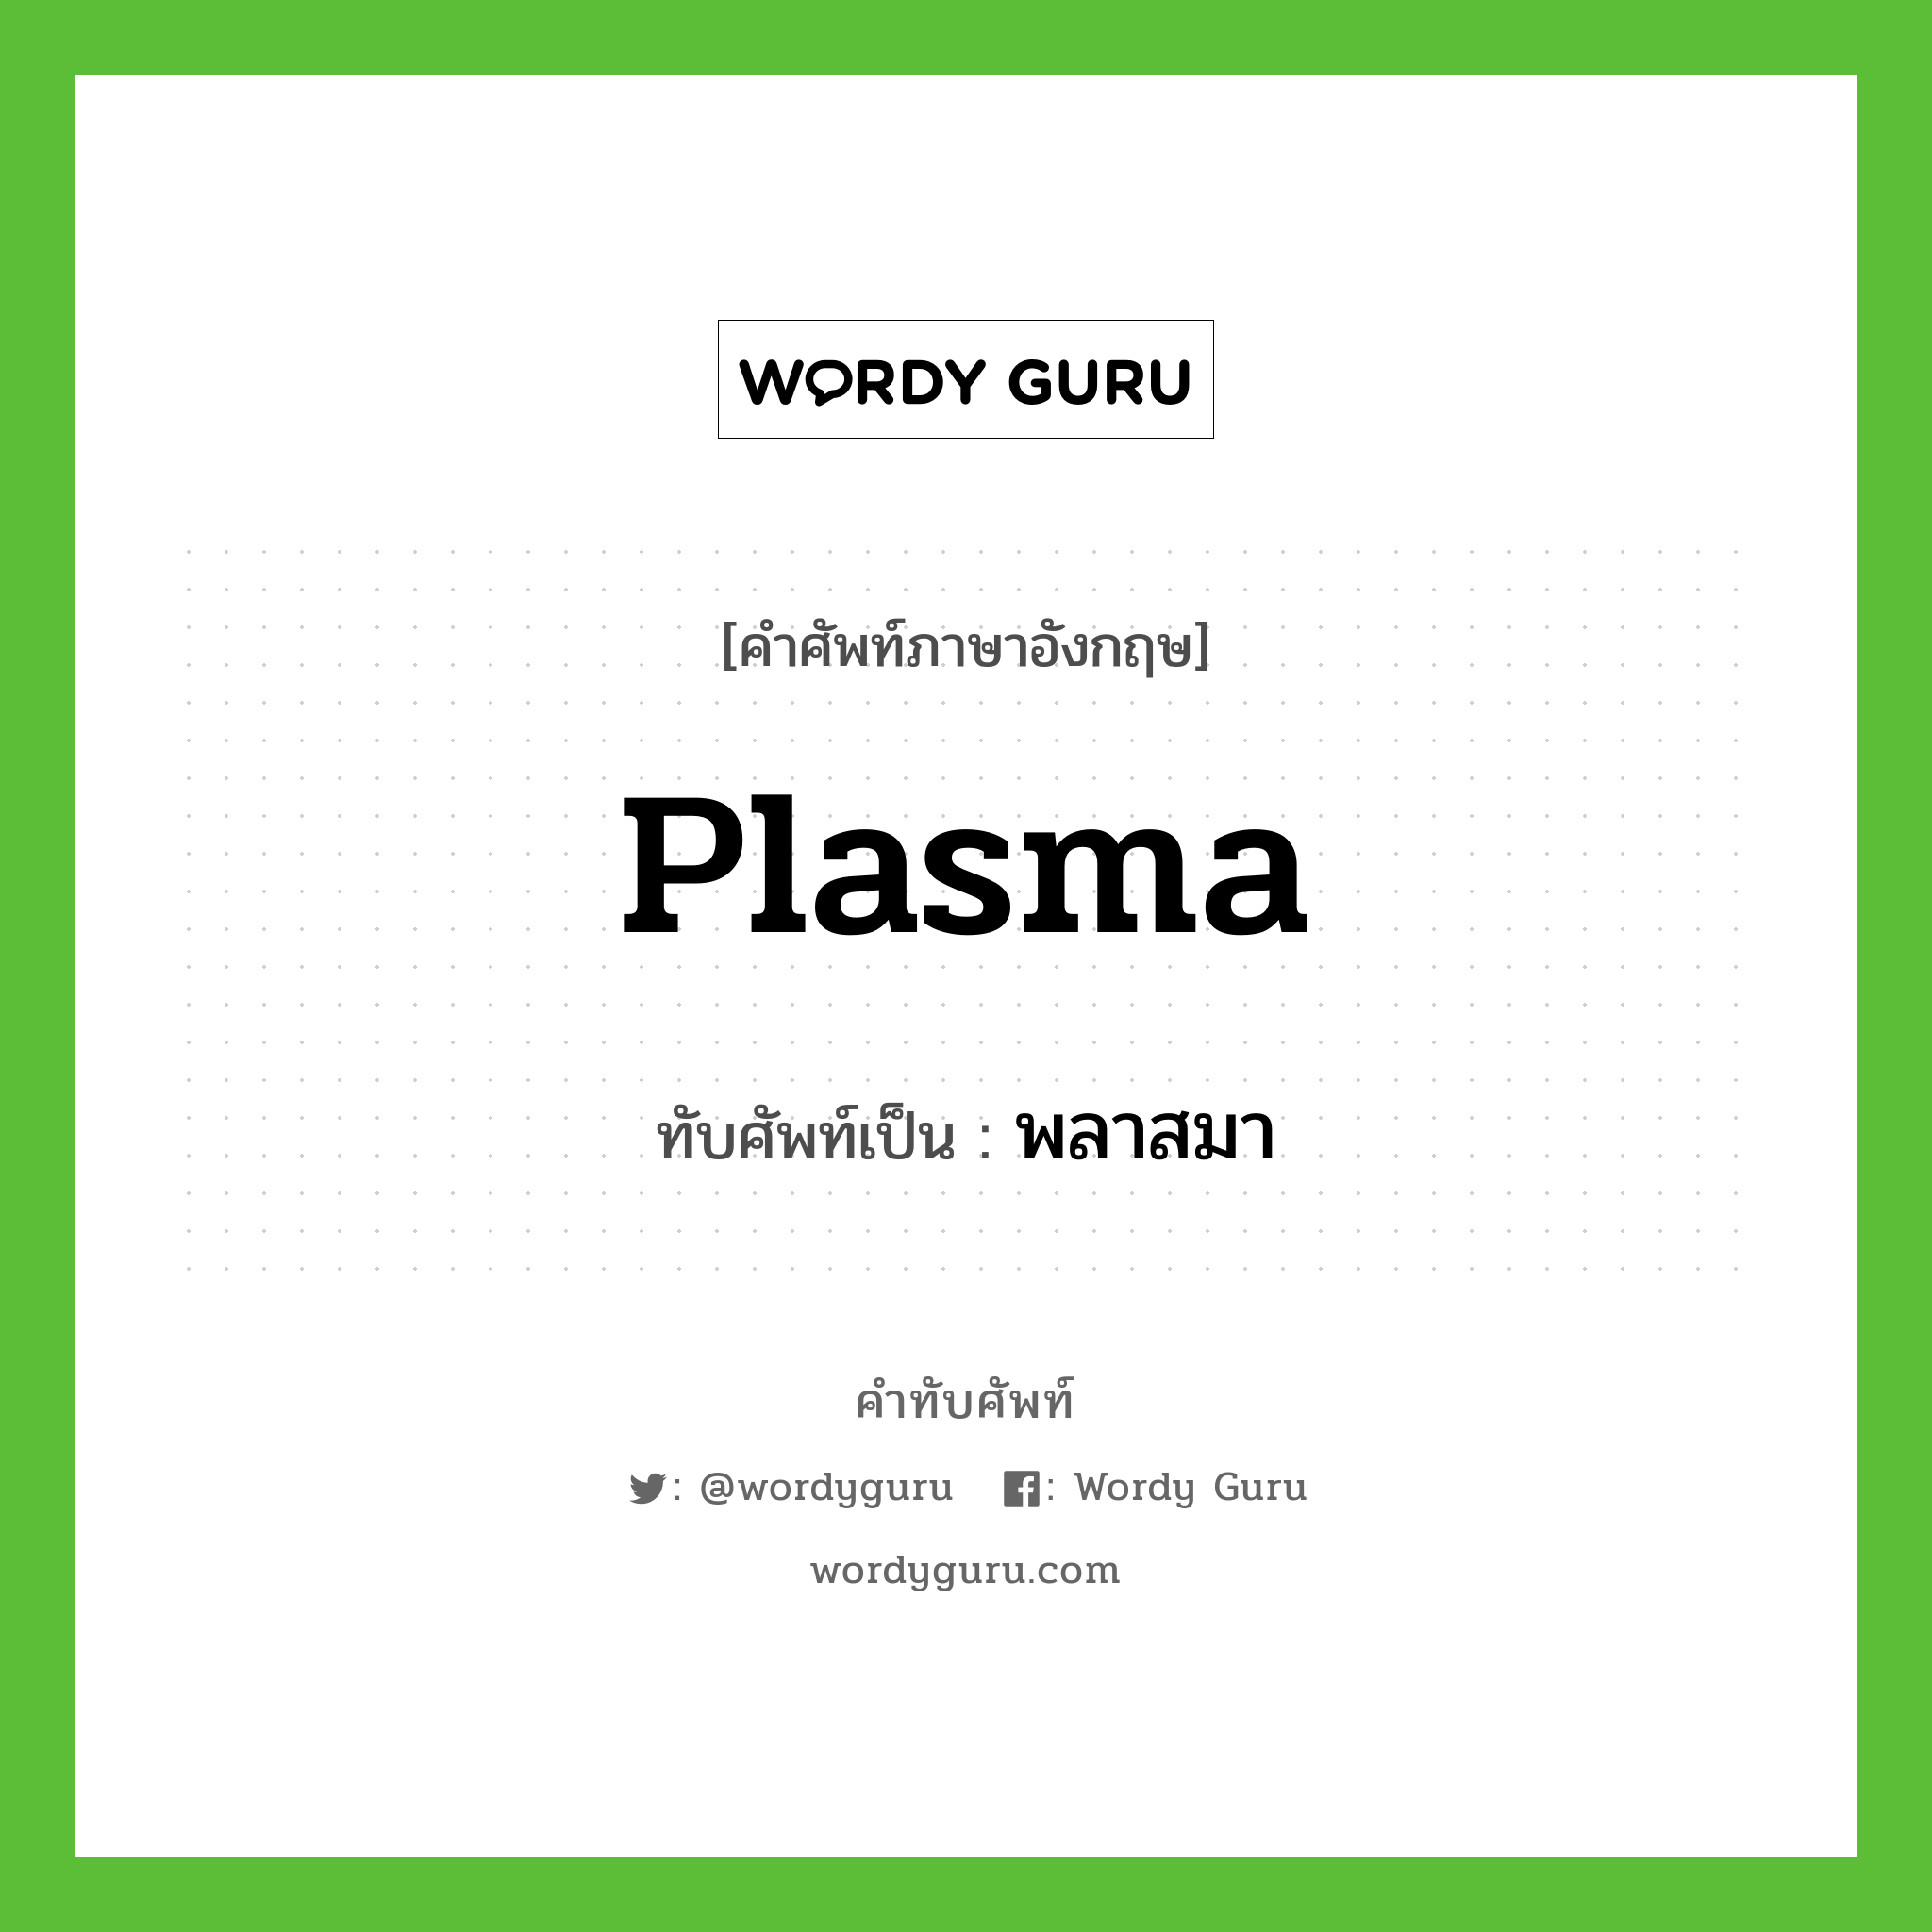 plasma เขียนเป็นคำไทยว่าอะไร?, คำศัพท์ภาษาอังกฤษ plasma ทับศัพท์เป็น พลาสมา